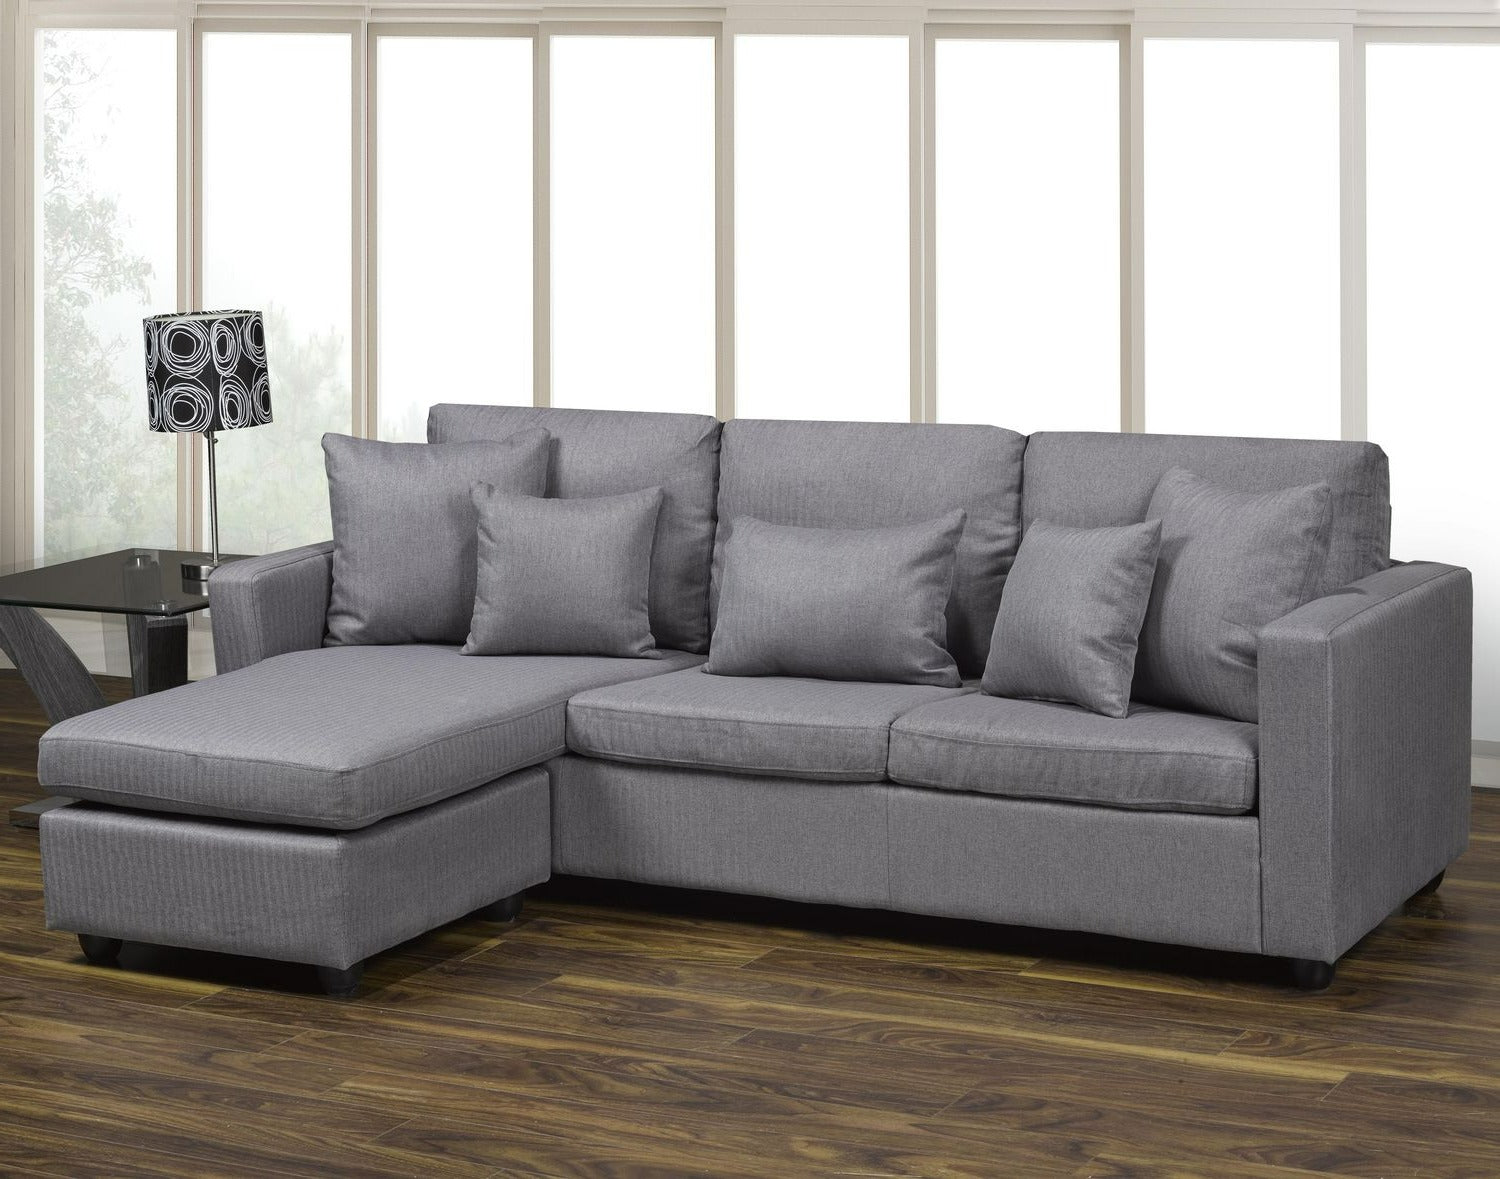 Barcelona Sectional Sofa with Movable Ottoman 4522